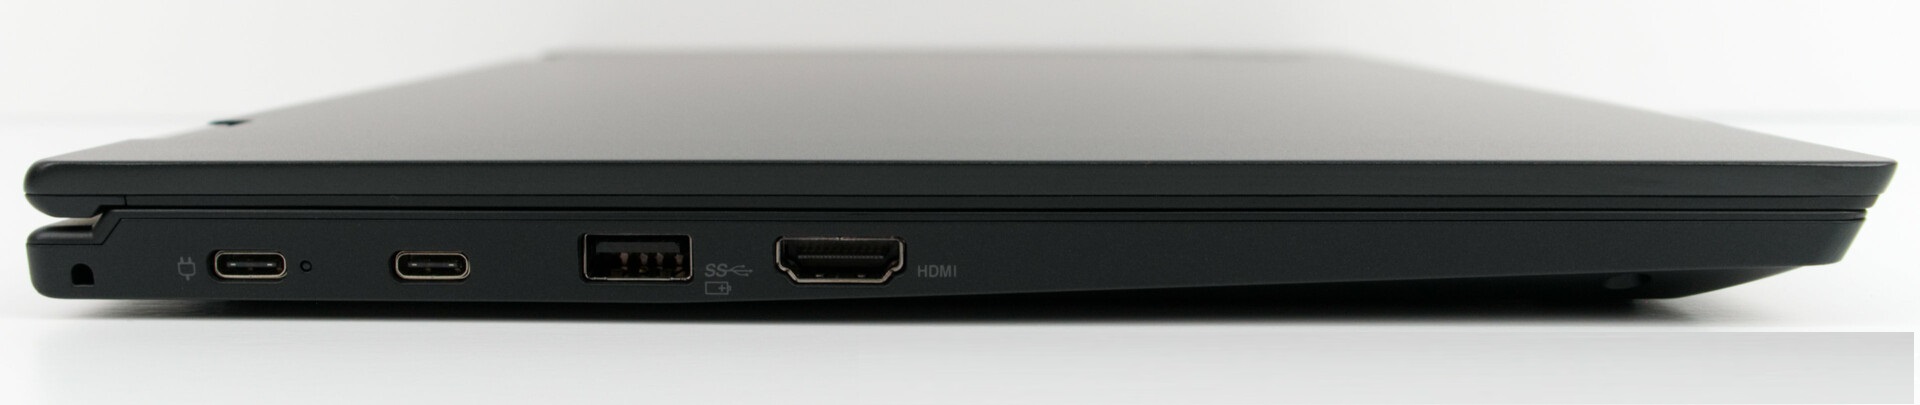 Đánh giá Lenovo Thinkpad L390 Yoga: Laptop 2 trong 1 cao cấp, giá tốt, Chuyên trang tư vấn Laptop